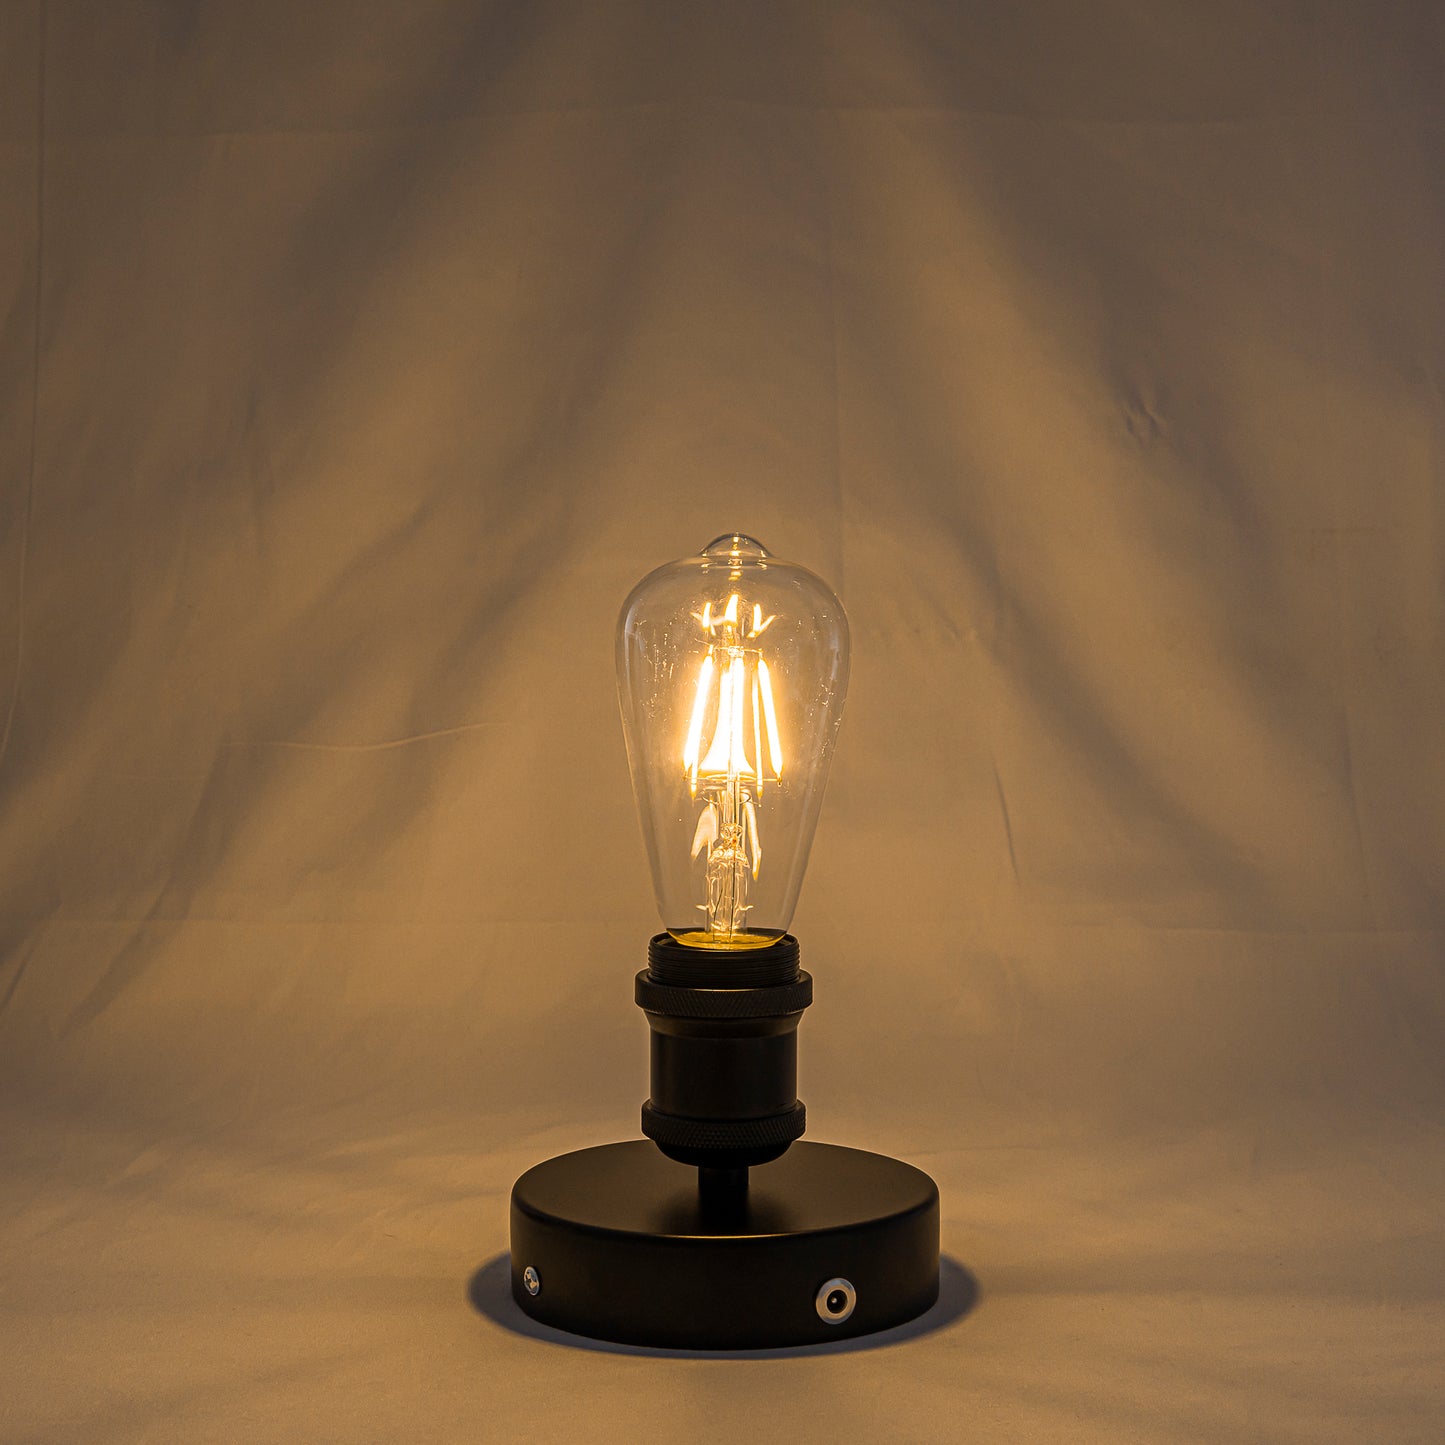 キャンペーン電球付属 充電式ライト バッテリー内蔵式照明  リモコン付き 配線不要 電球付属  LEDライト  賃貸対応 テーブルランプ  デスクランプ ベッドサイドサイト